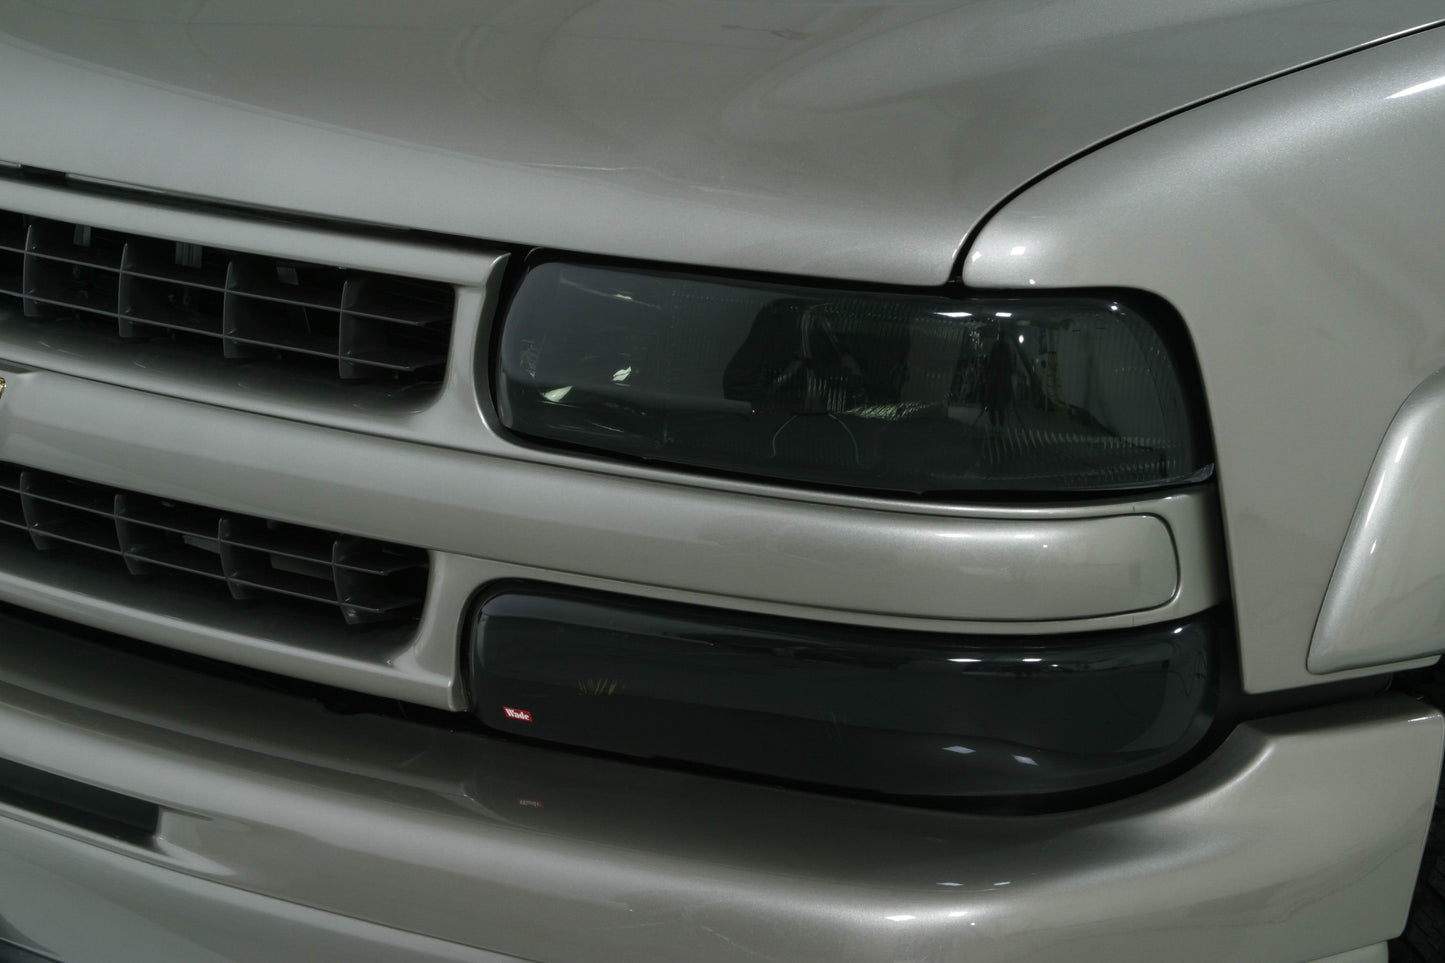 1993 Volkswagen Golf III Head Light Covers